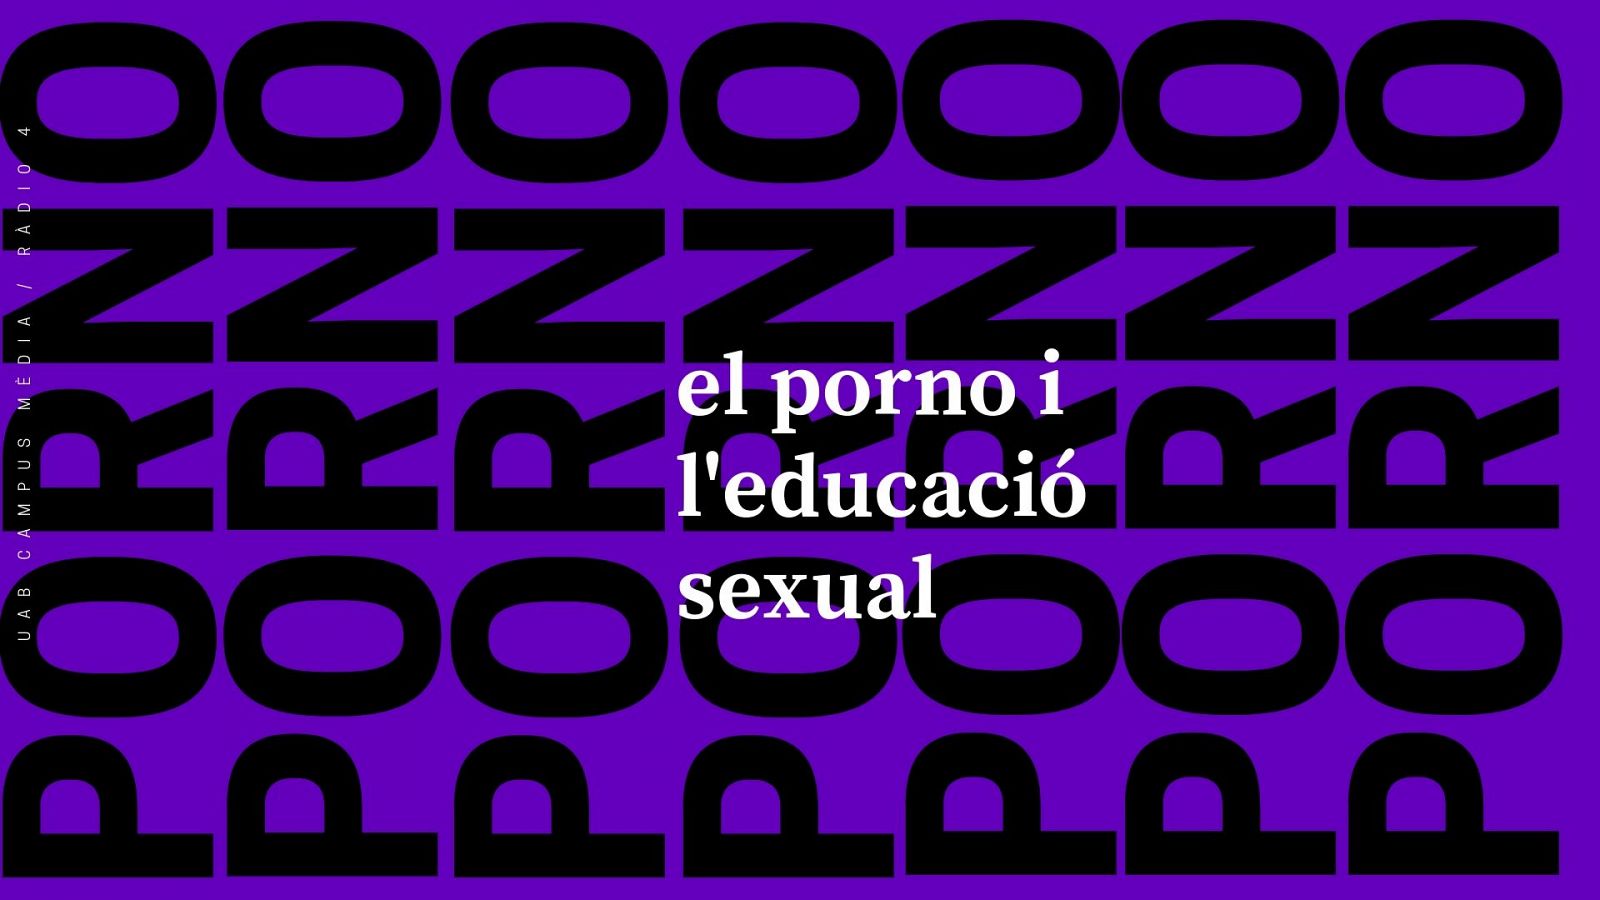 Onada feminista 14/09/19 - Educació sexual i pornografia